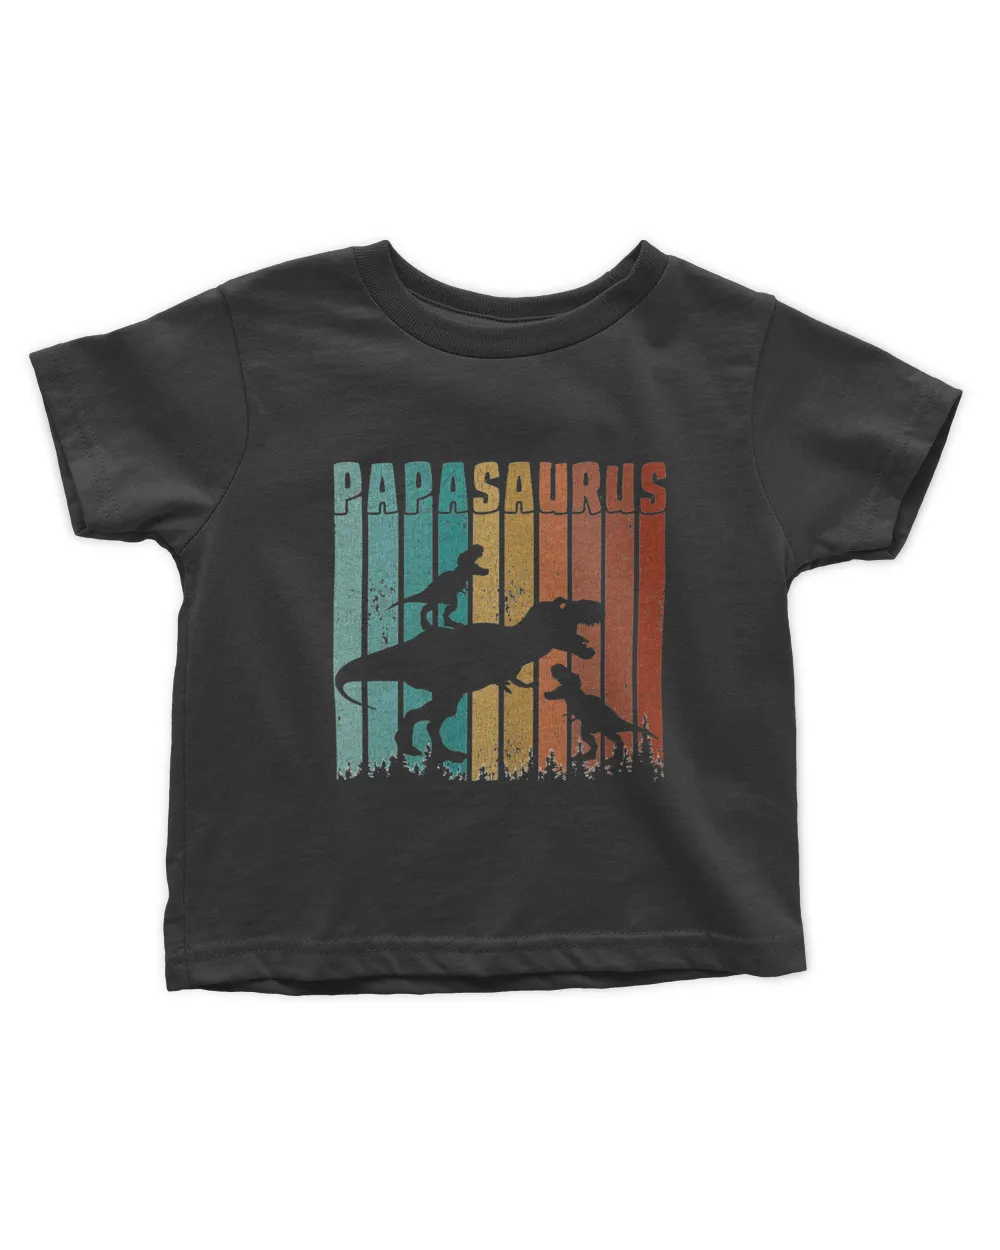 Papasaurus Trex Papa Retro Fathers Day Dinosaur Dad Daddy